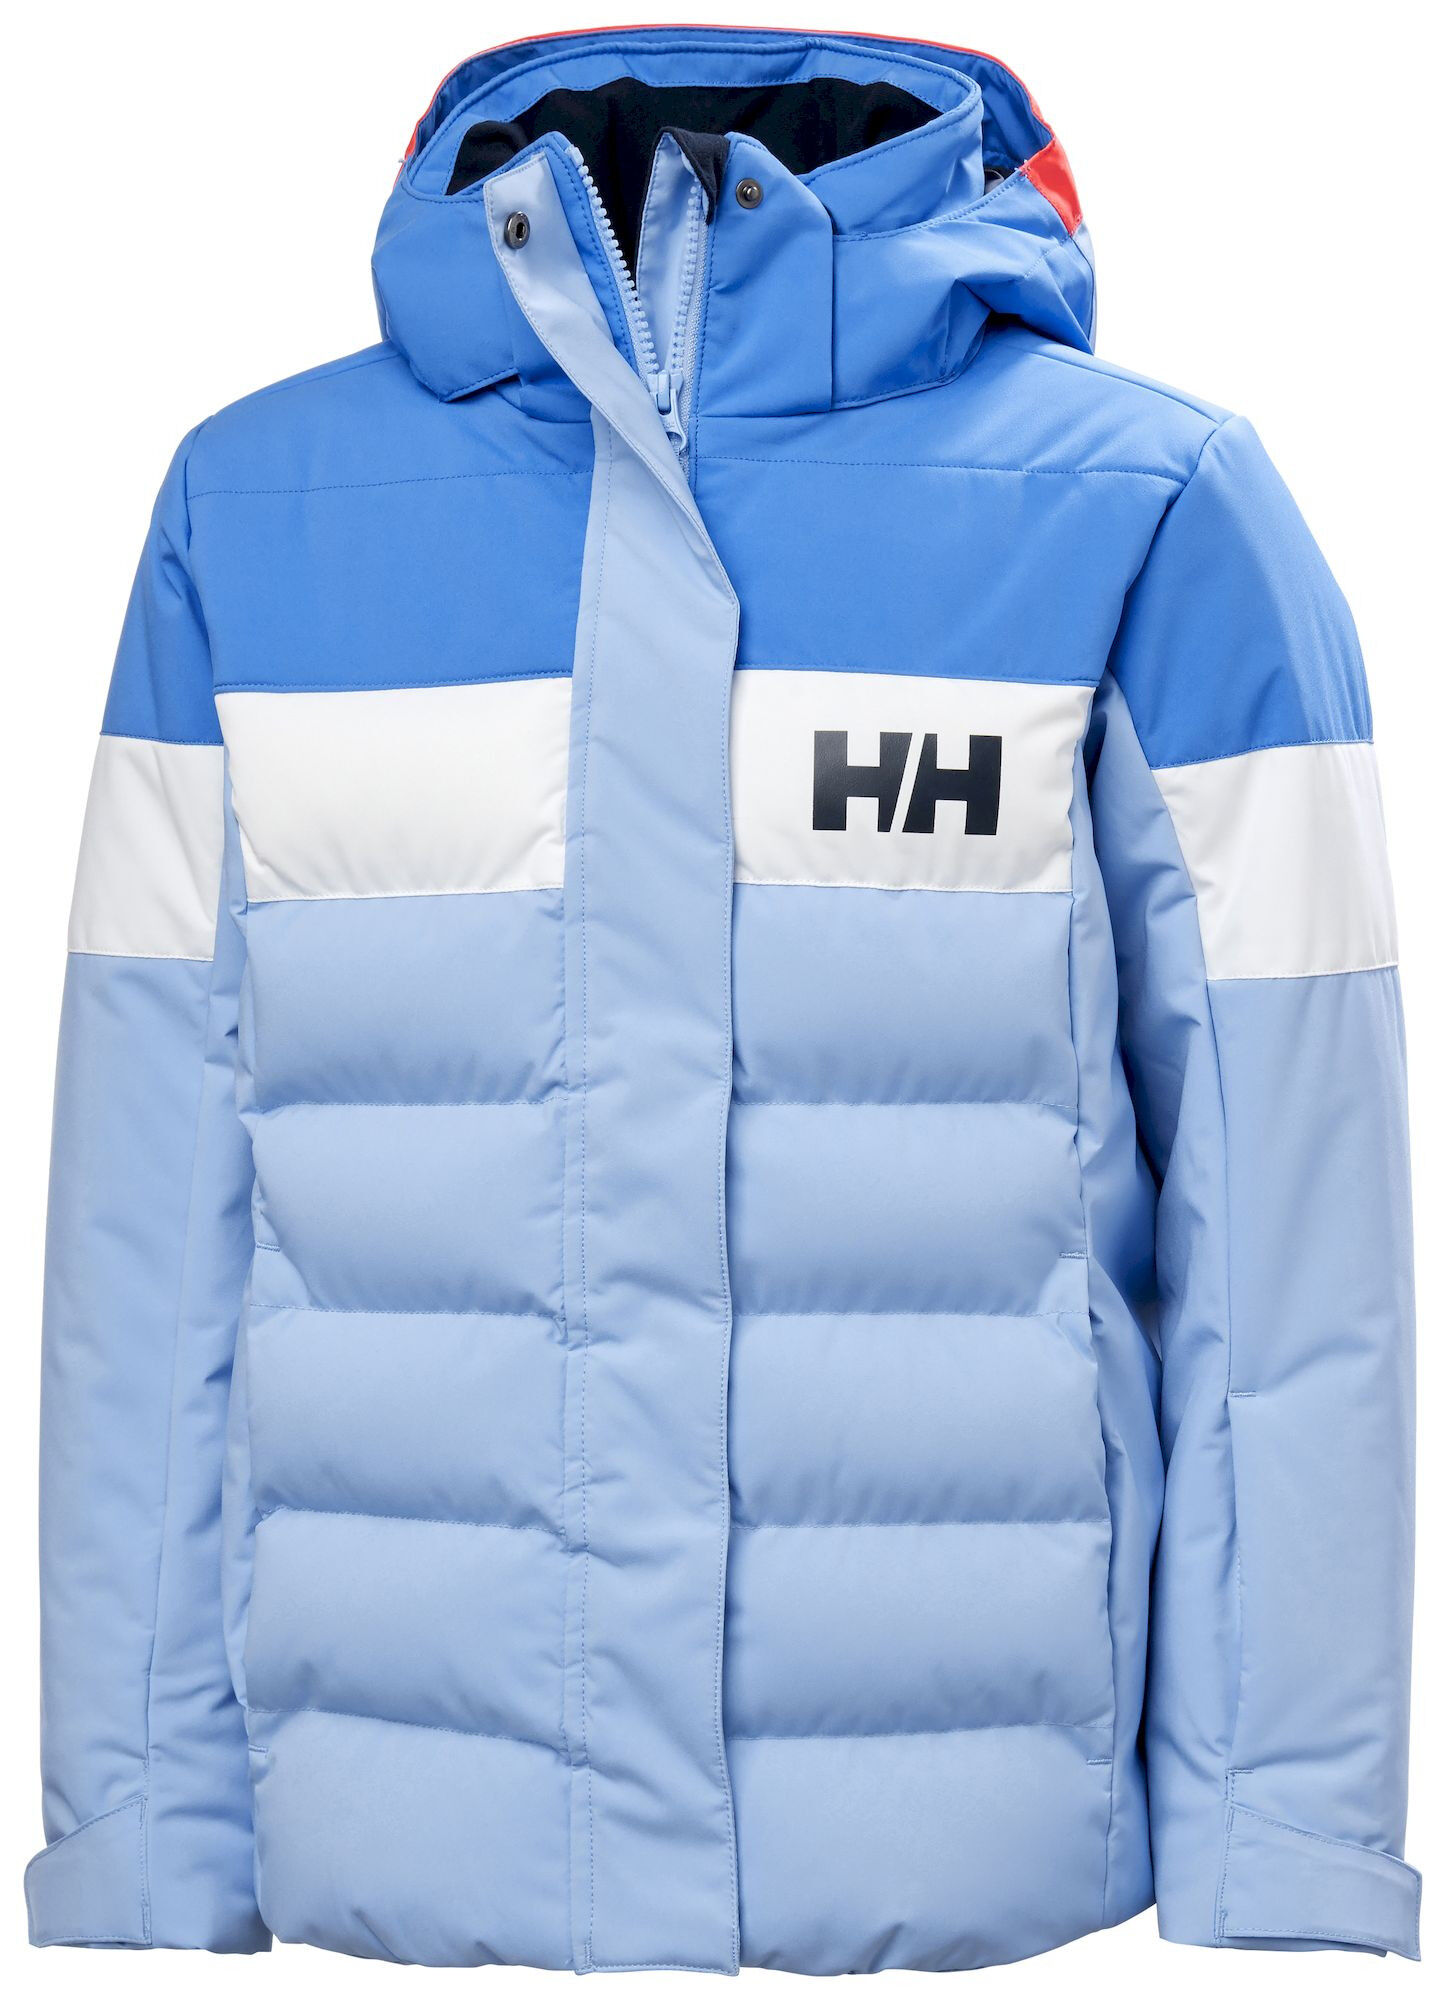 Helly Hansen Jr Diamond Jacket - Chaqueta de esquí - Niños